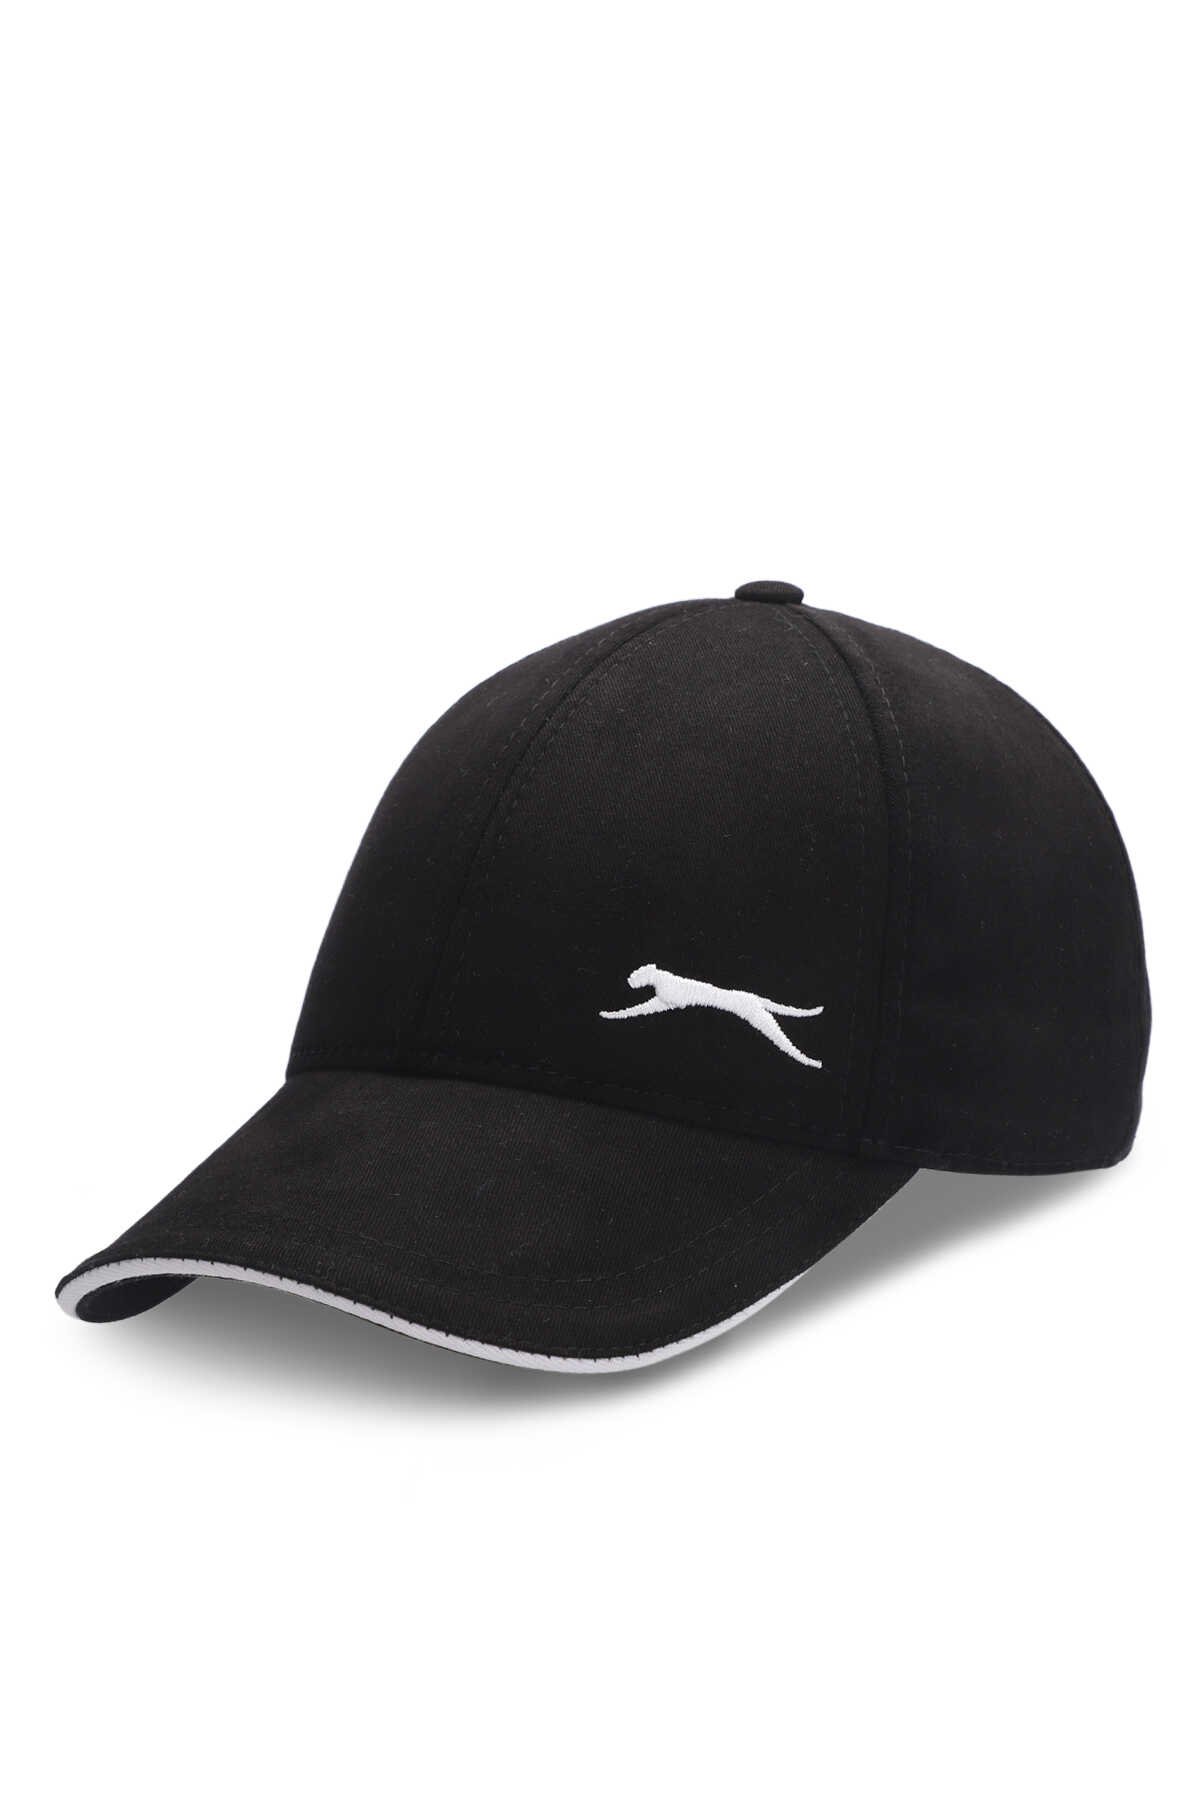 Slazenger - Slazenger SILVA Unisex Şapka Siyah / Beyaz